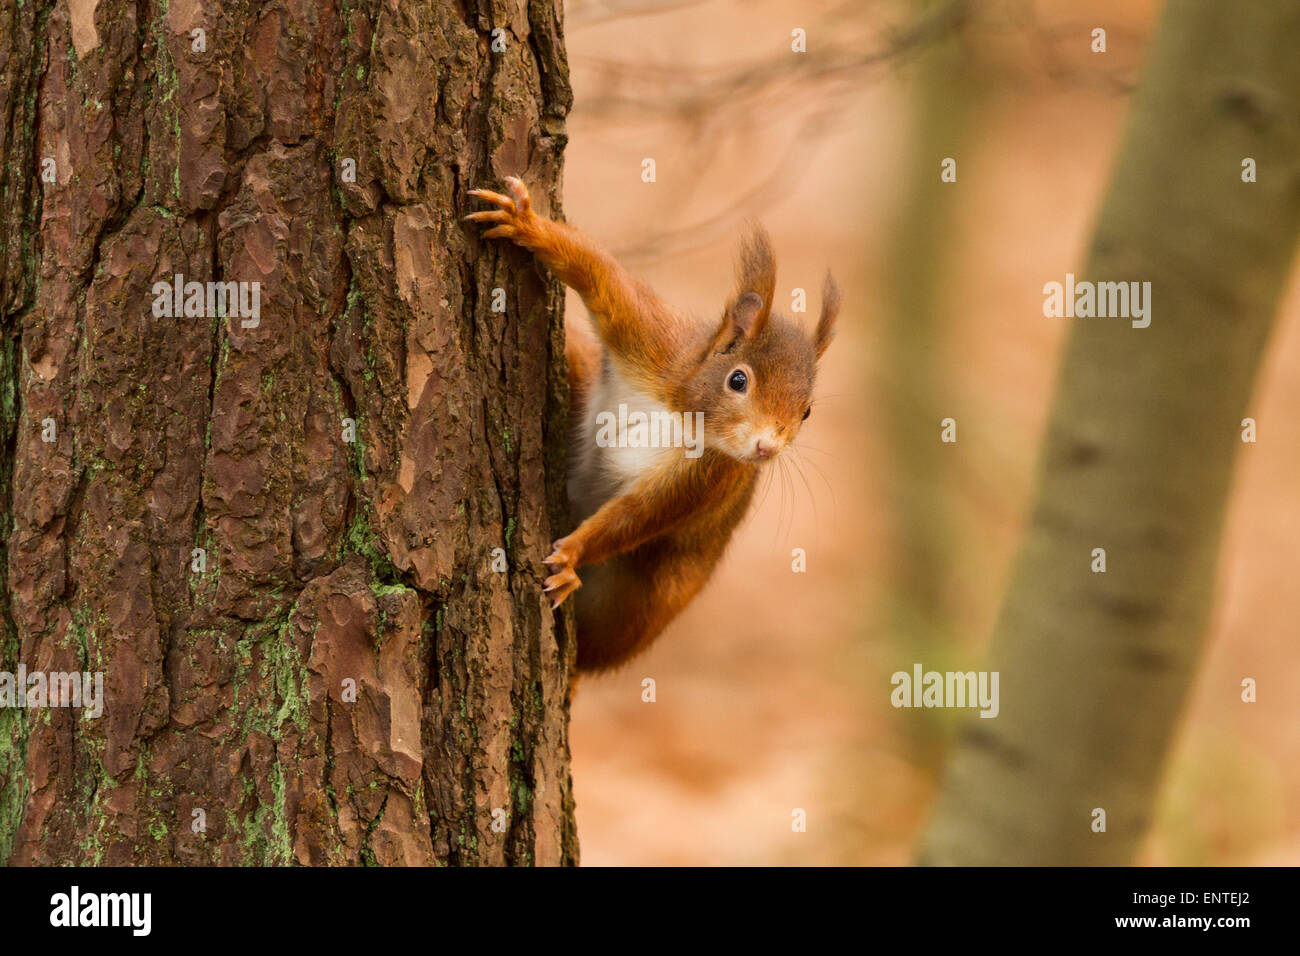 Red scoiattolo (Sciurus vulgaris) in una foresta, REGNO UNITO Foto Stock